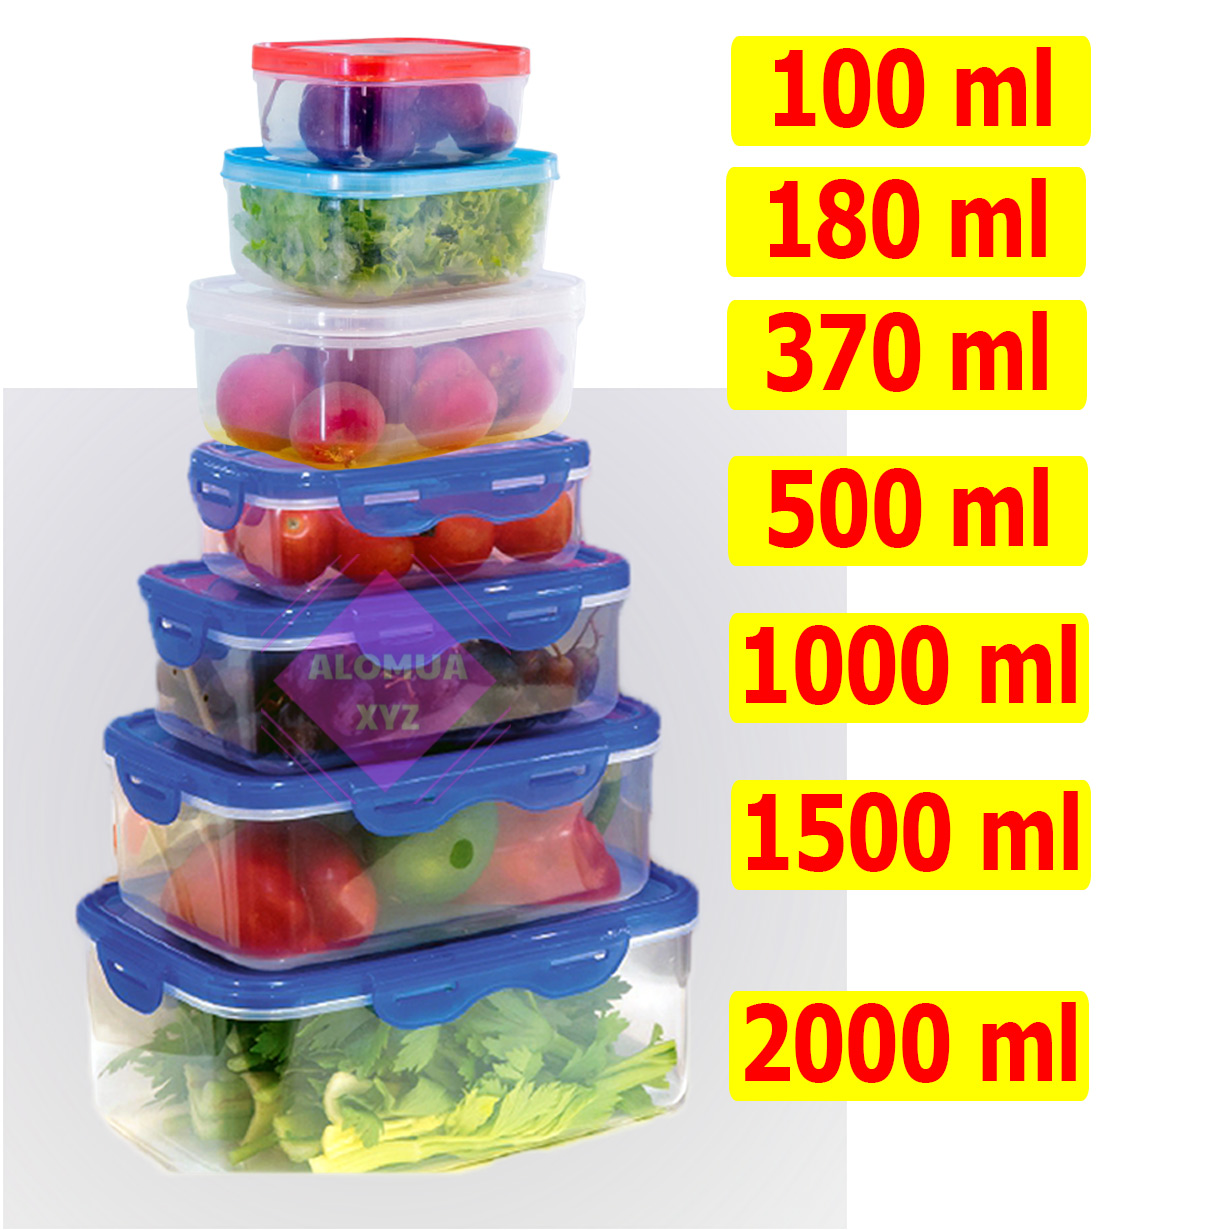 Set 7 hộp nhựa  đựng thực phẩm chữ nhật, hộp có nắp gài chắc chắn.  Bộ hộp đủ loại nhiều dung tích  từ 100 đến 2000ml  HTP78910 HB010203 Alomua